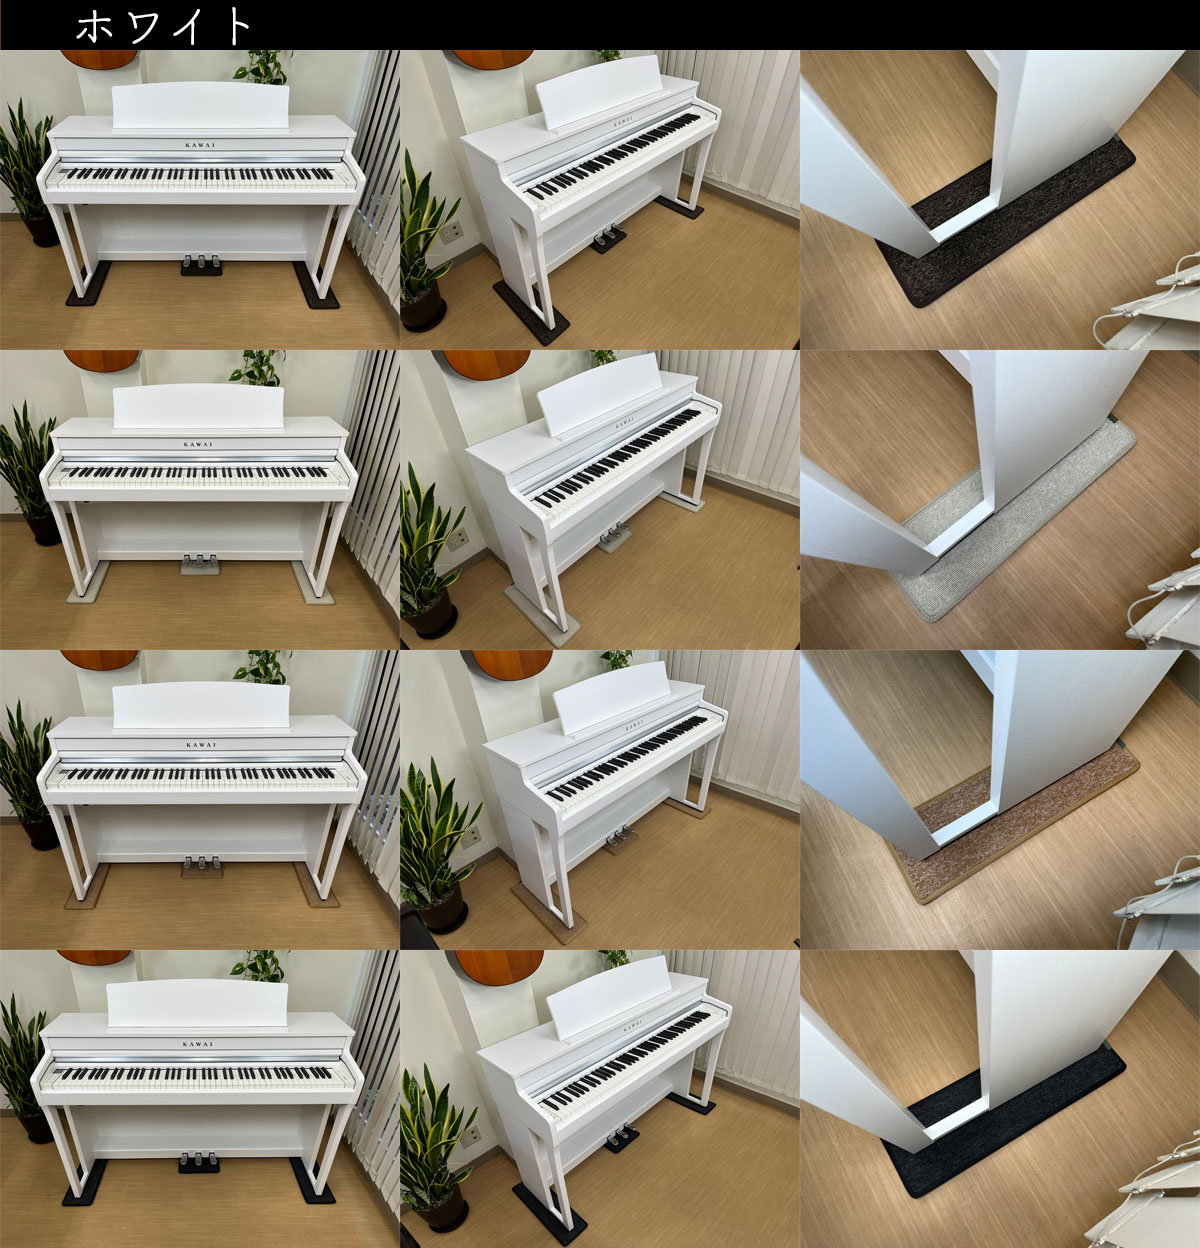 ホワイト（ピアノ）とマットの組み合わせ